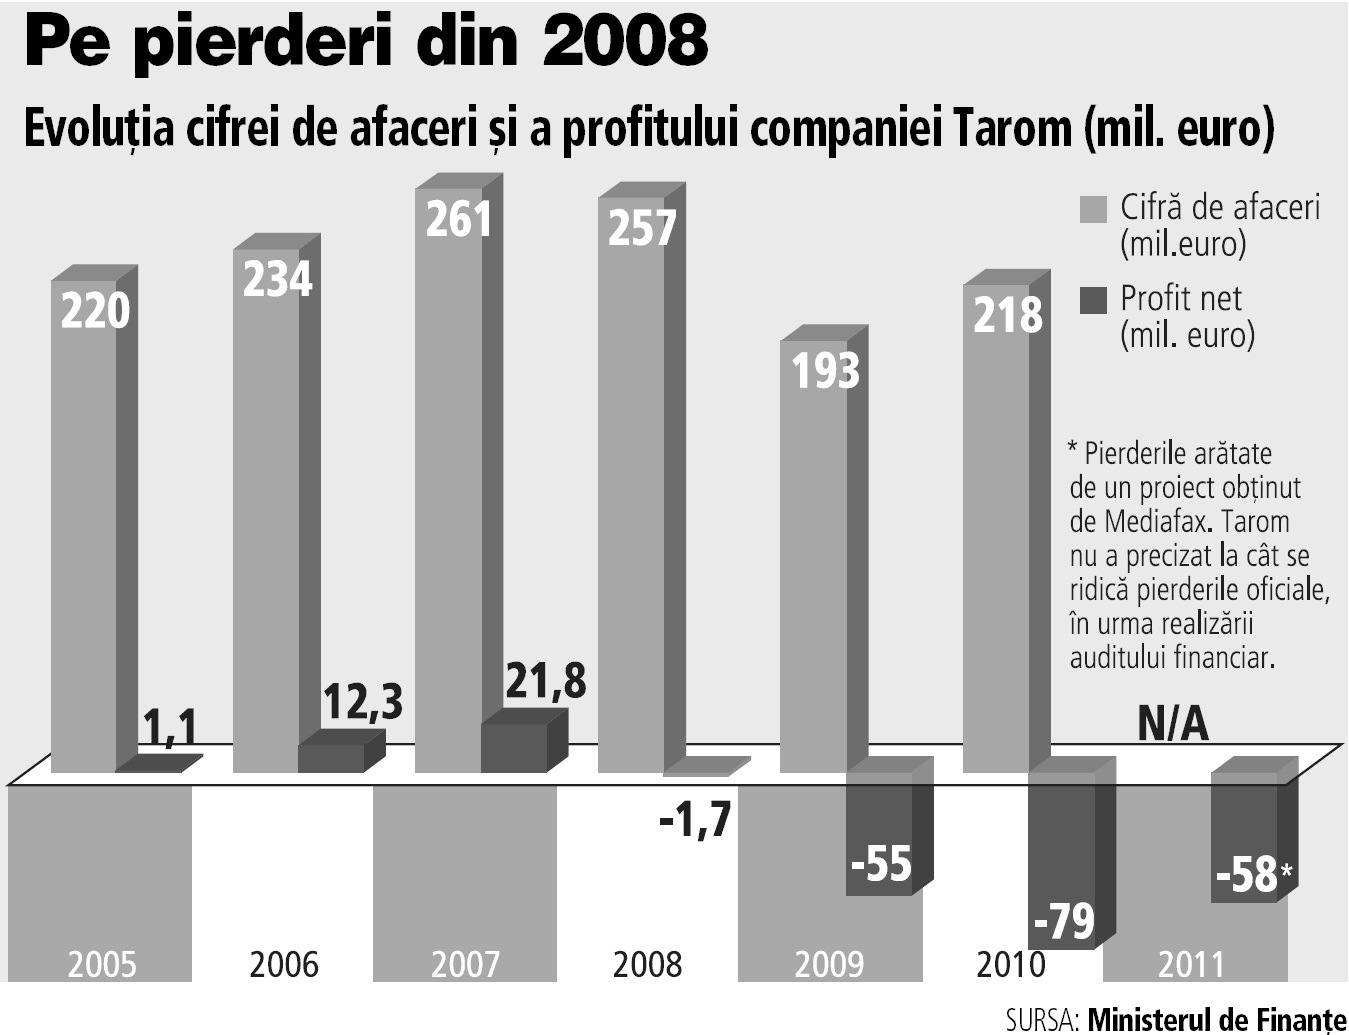 Tarom bifează al patrulea an de pierderi: 2011 a adus o gaură de 58,6 mil. €, iar prognozele până în 2014 arată tot pierderi